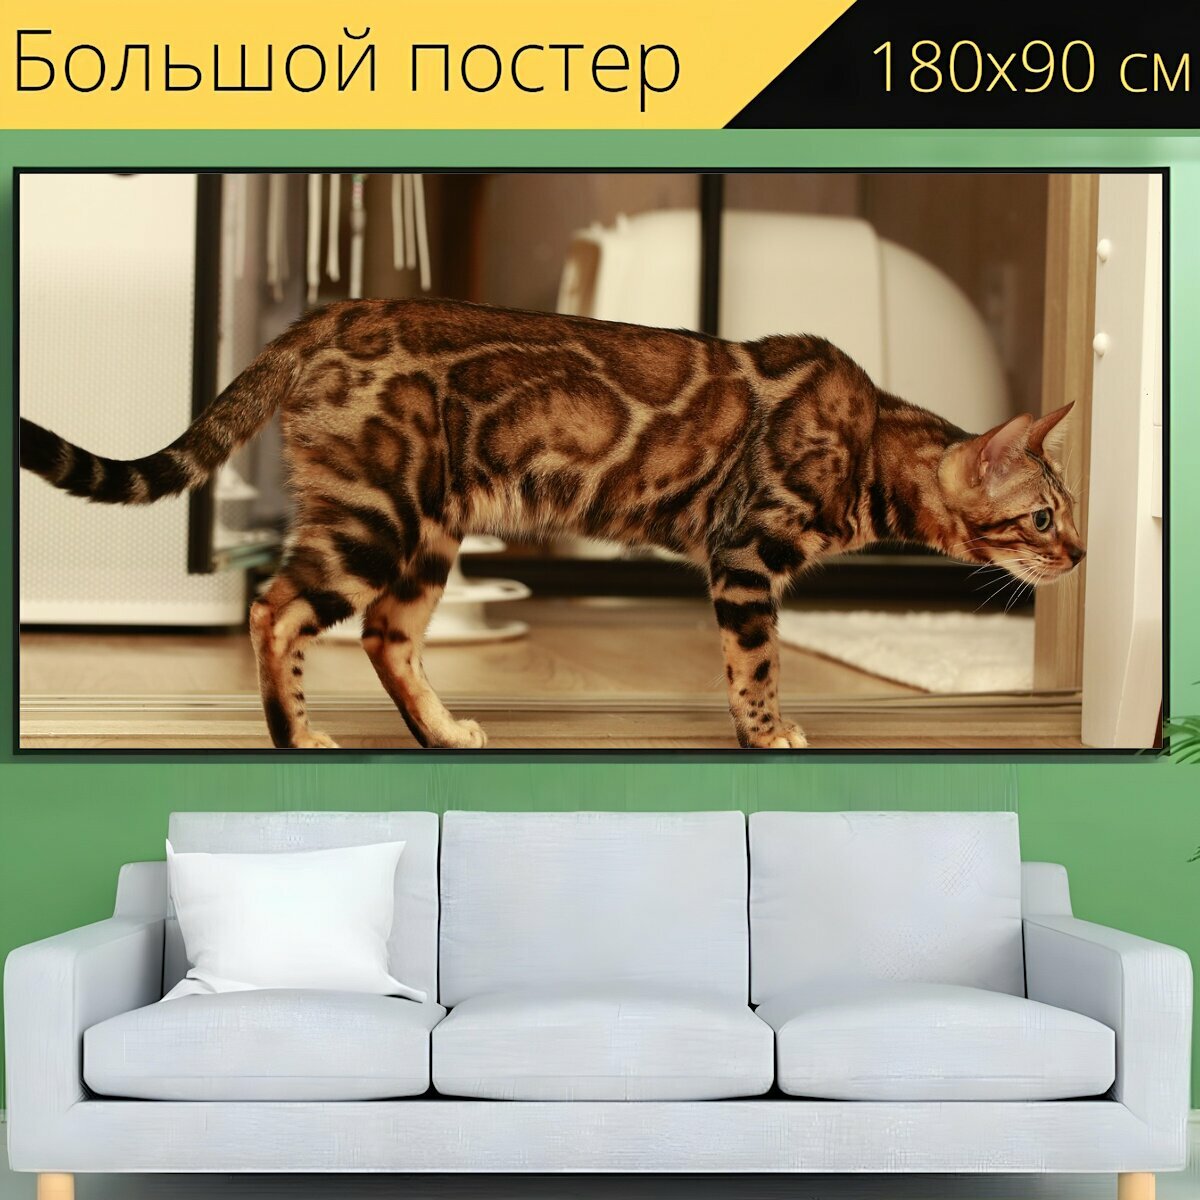 Большой постер "Кошка, бенгал, бенгальская кошка" 180 x 90 см. для интерьера